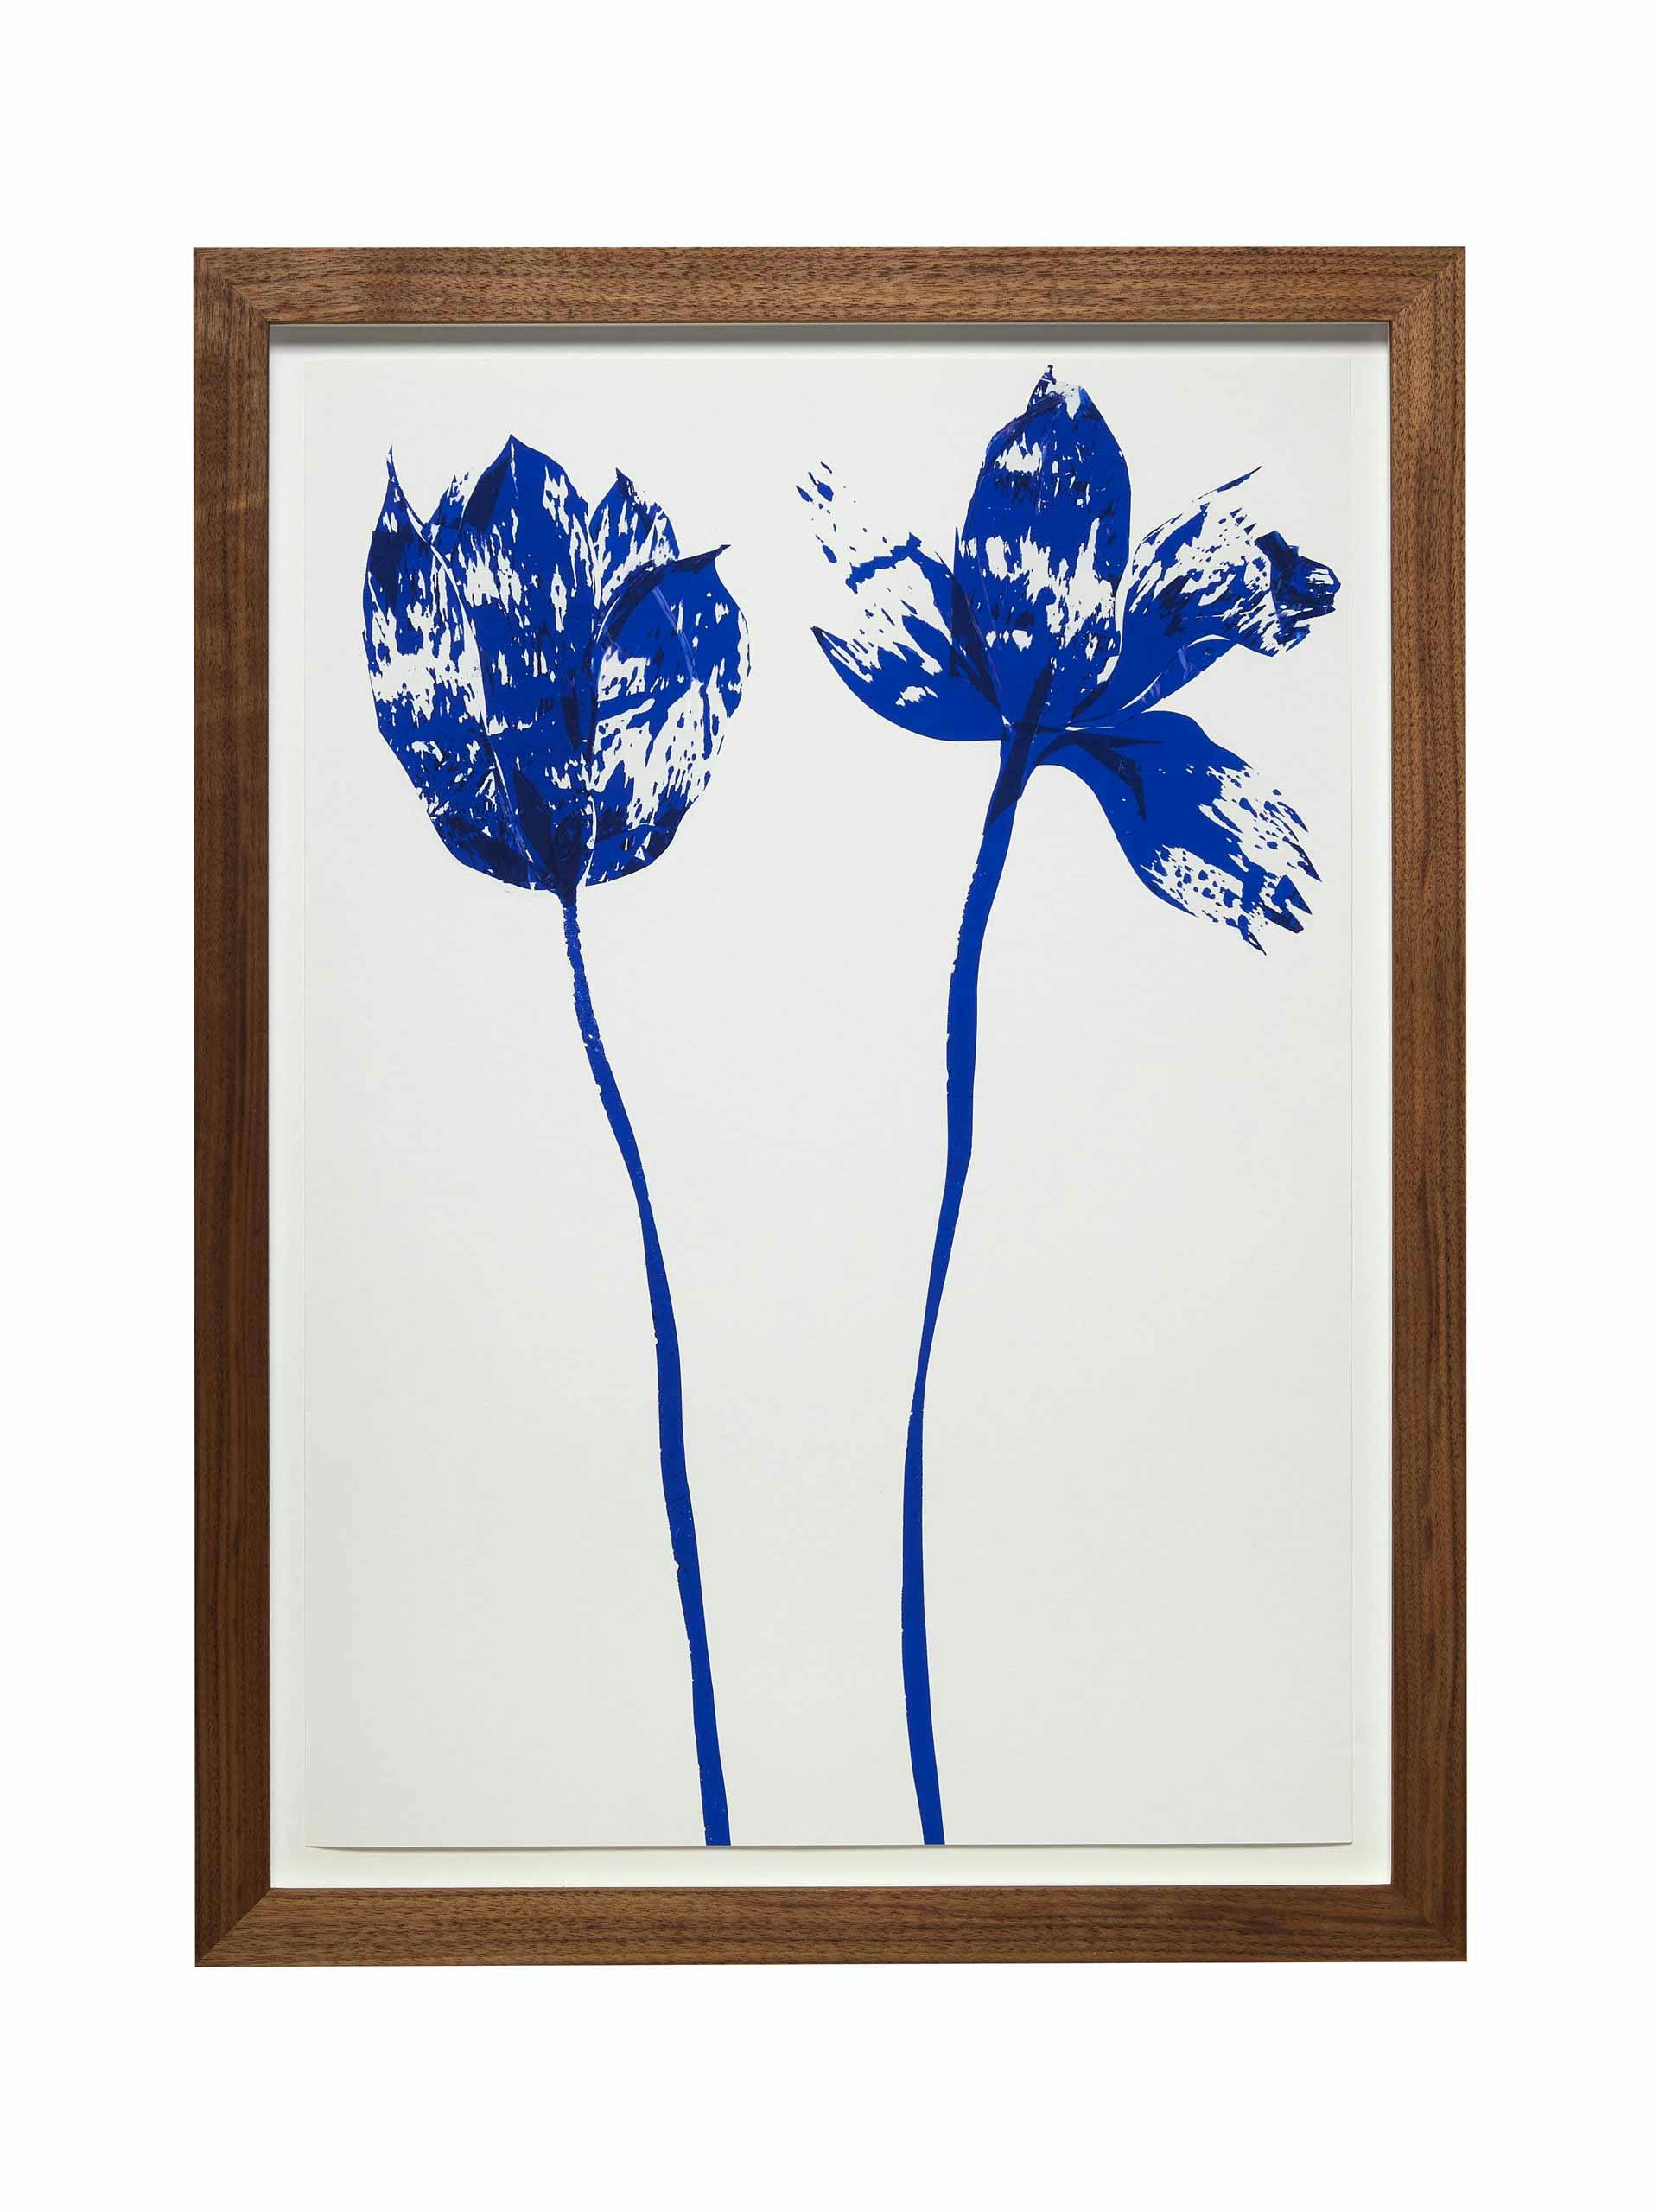 "Blue Flowers" by Blue Farrier